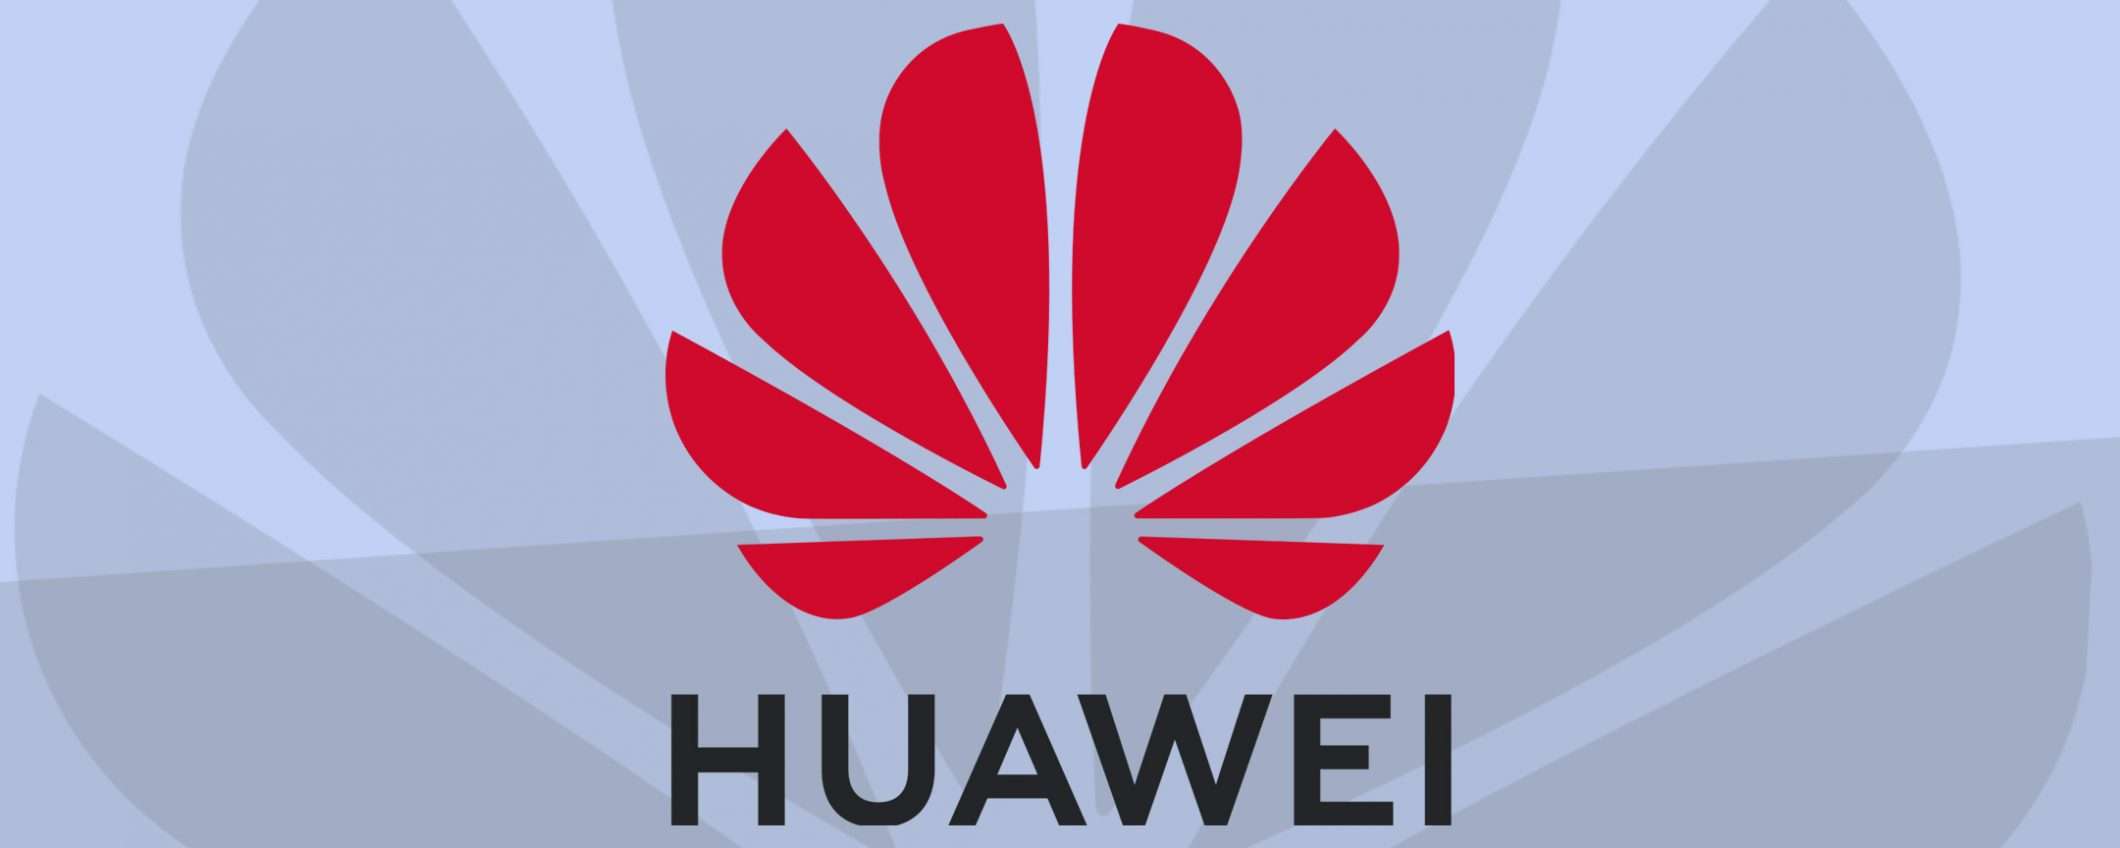 Huawei conferma la costruzione del centro R&D in UK